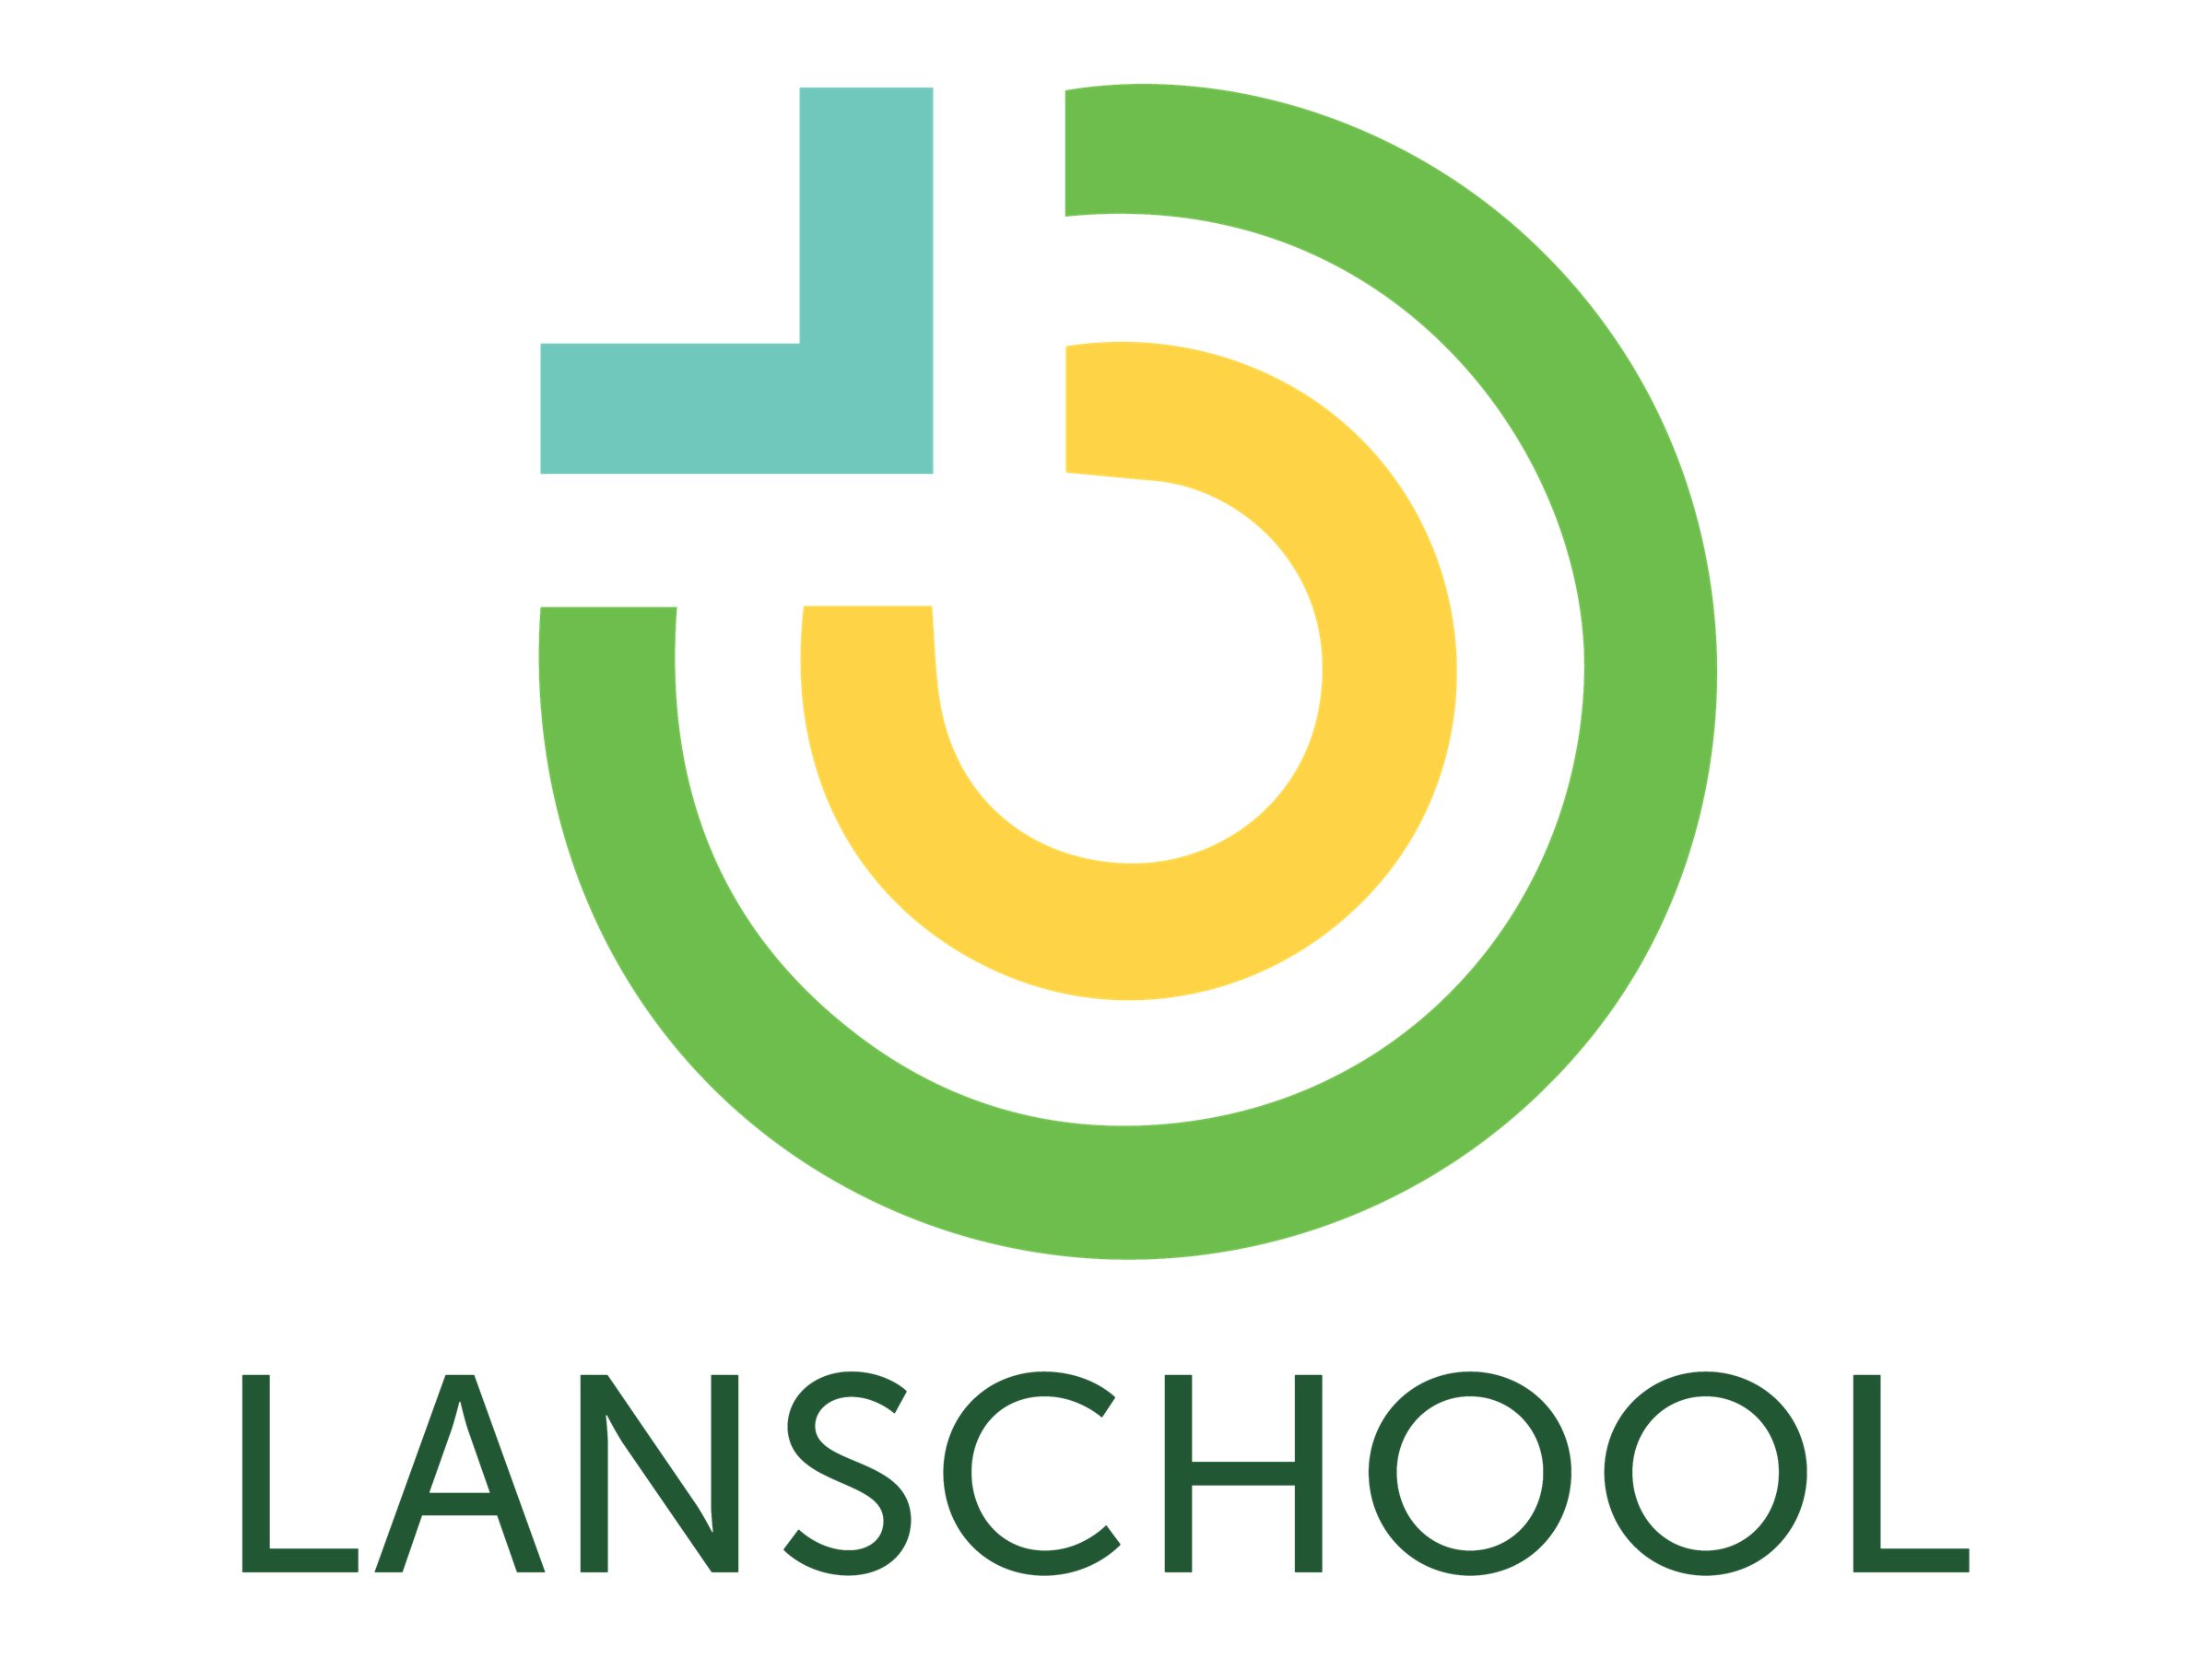 LanSchool - Standortlizenz (Abonnementlizenz) (1 Jahr) + Technical Support - 1 Schule (bis zu 500 Geräte) - akademisch - includes access to LanSchool and LanSchool Air